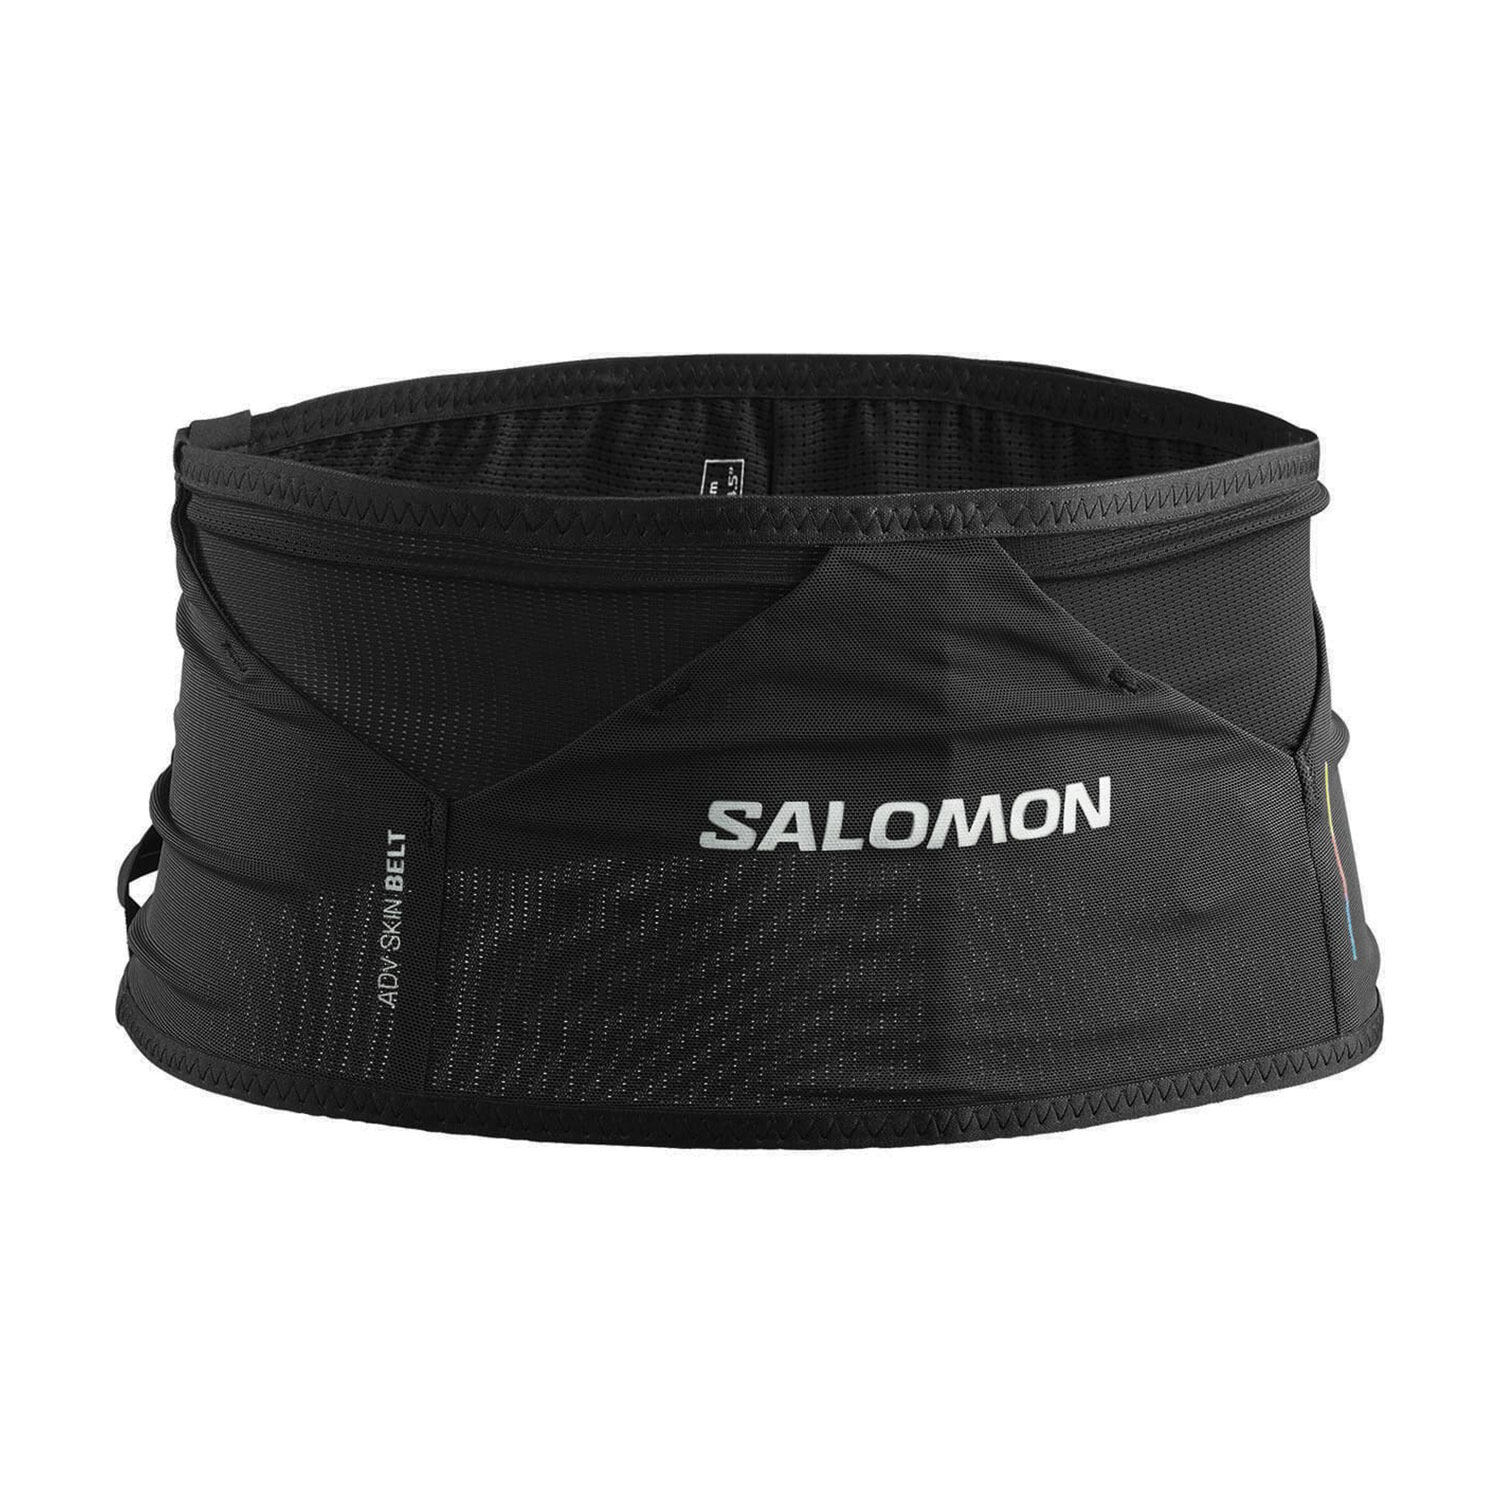 Salomon Adv Skin Belt跑步腰包